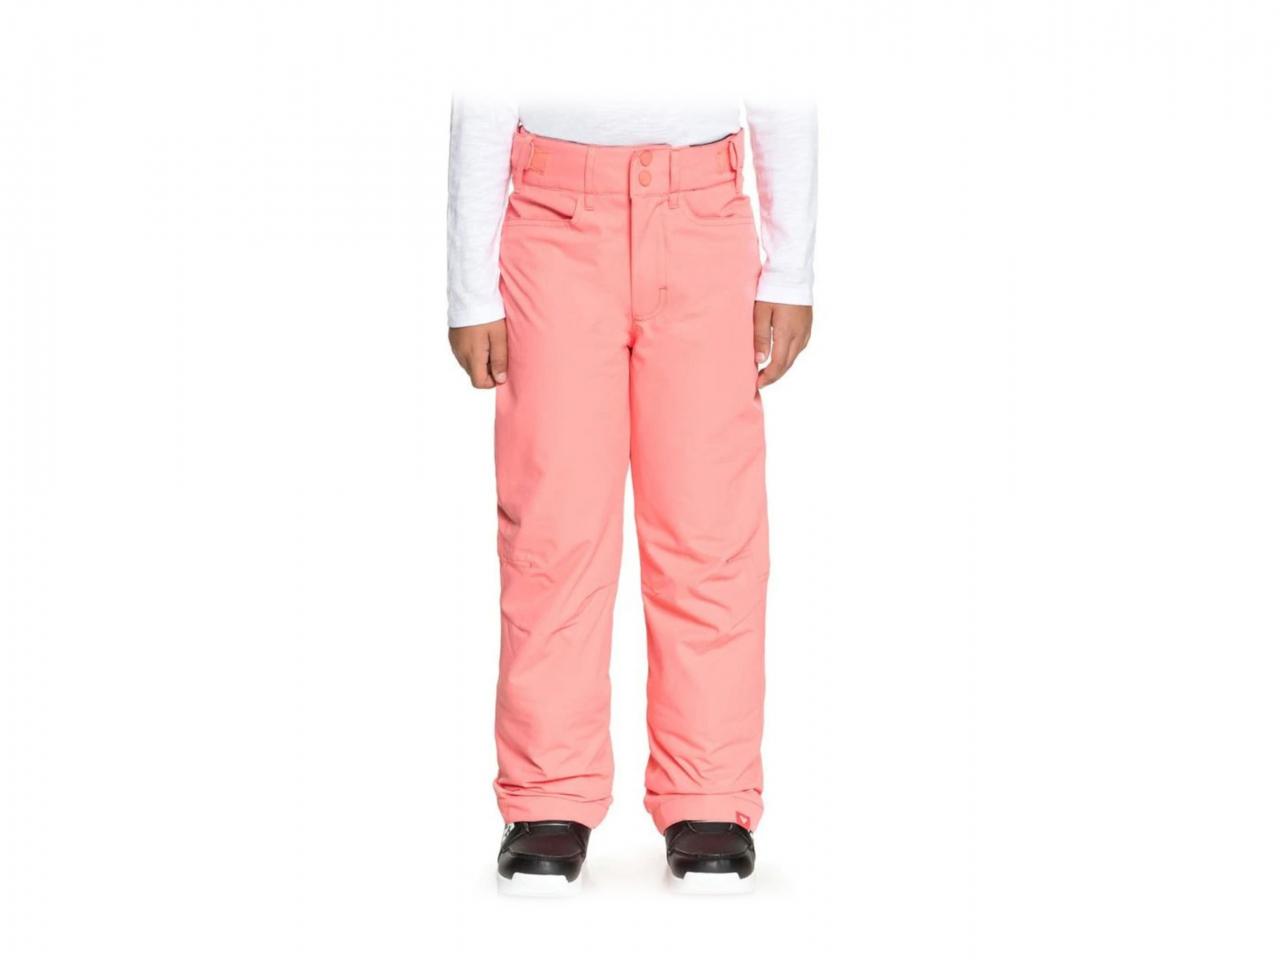 Dívčí snowboardové kalhoty ROXY Backyard 170, růžové